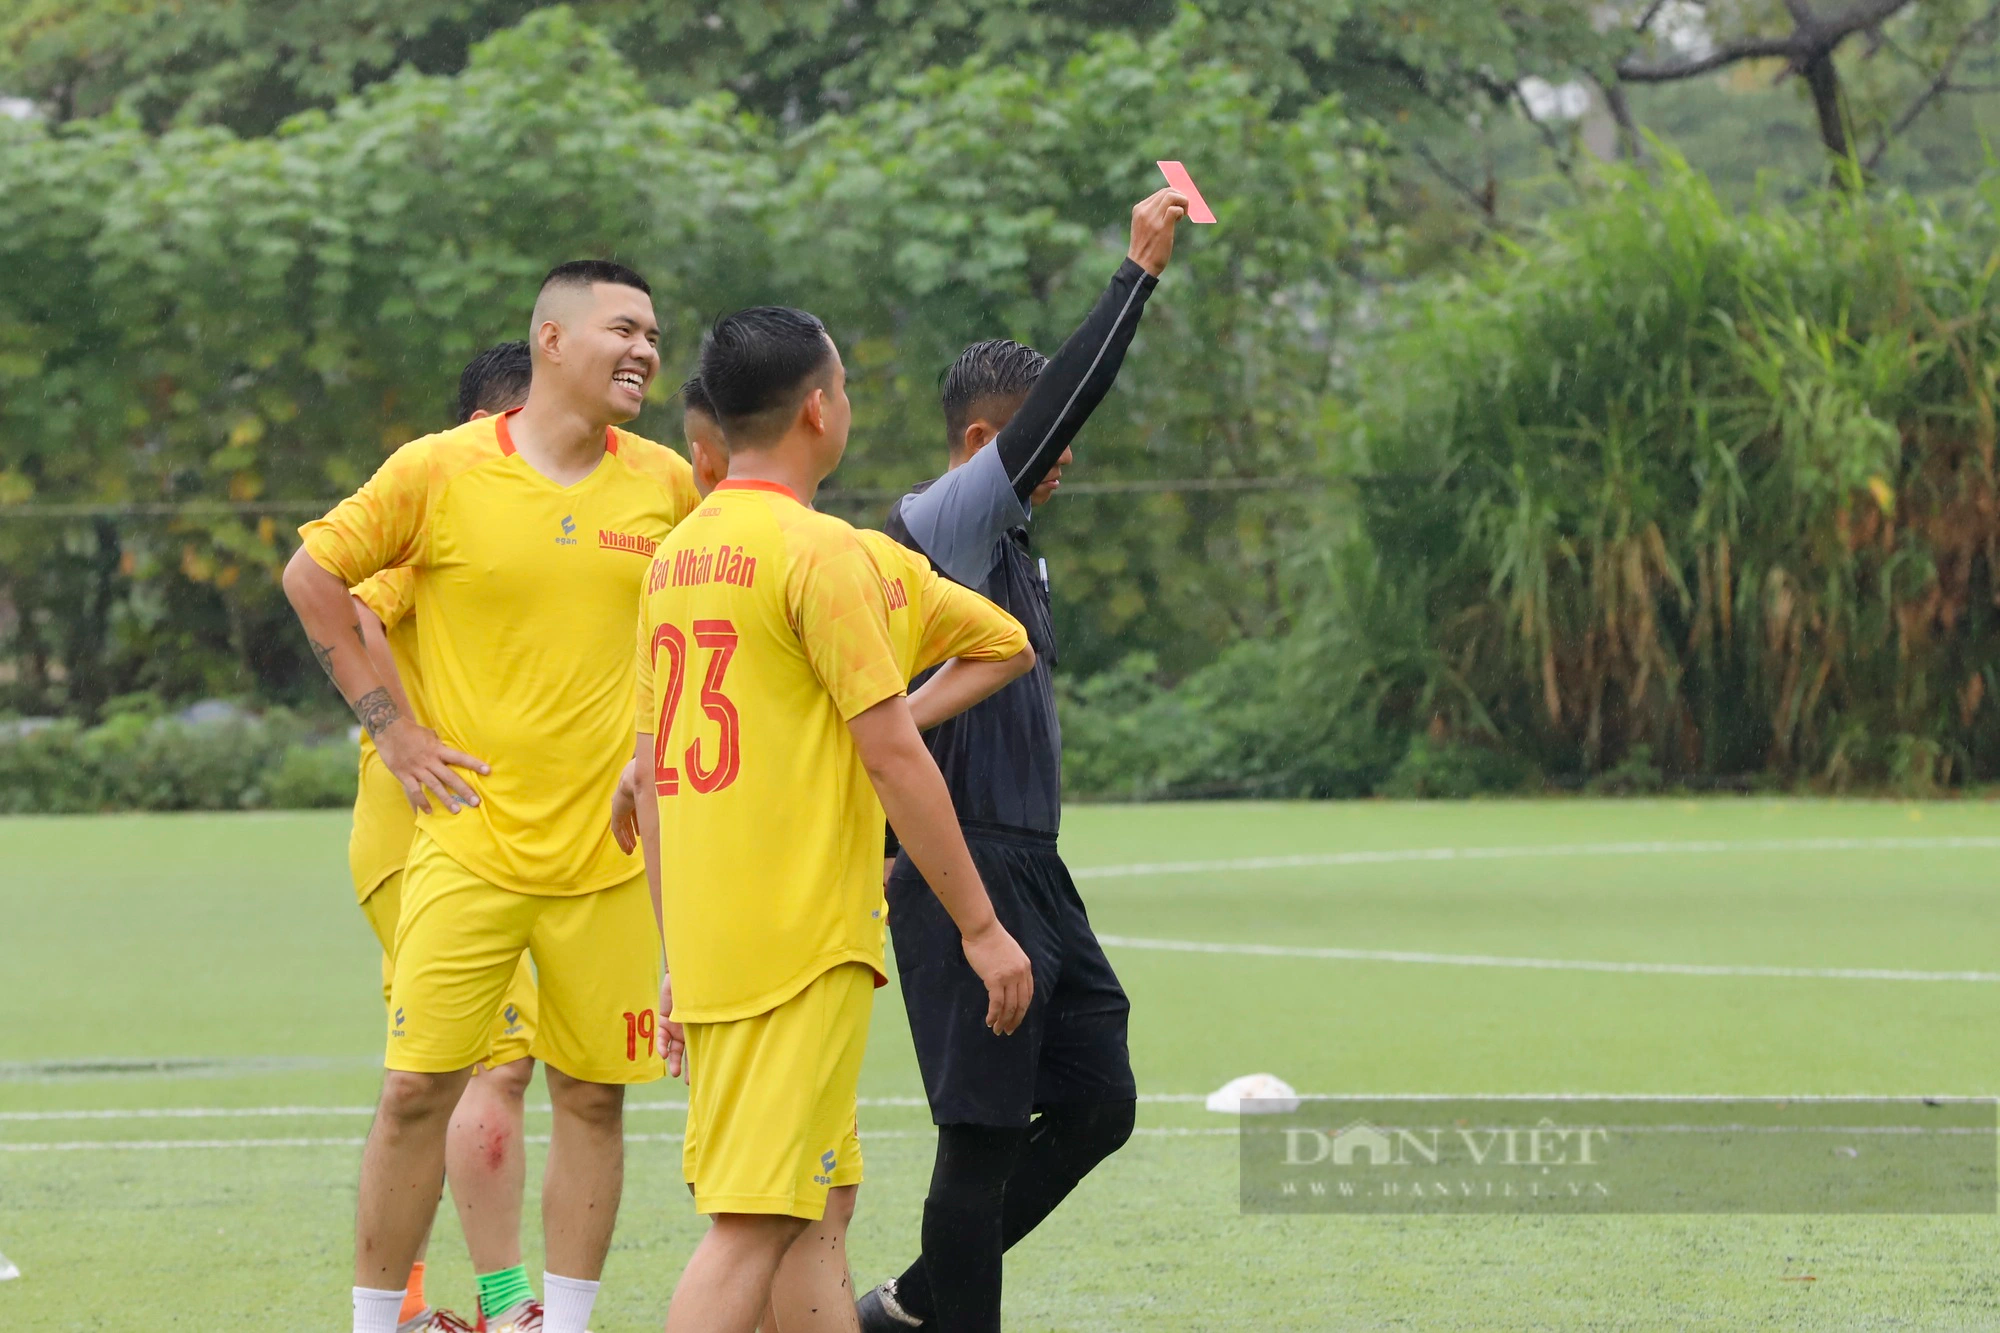 Loạt ảnh buổi thi đấu đầu tiên của giải bóng đá Báo NTNN/Dân Việt - tranh cúp mùa Thu lần thứ 14 - Ảnh 11.